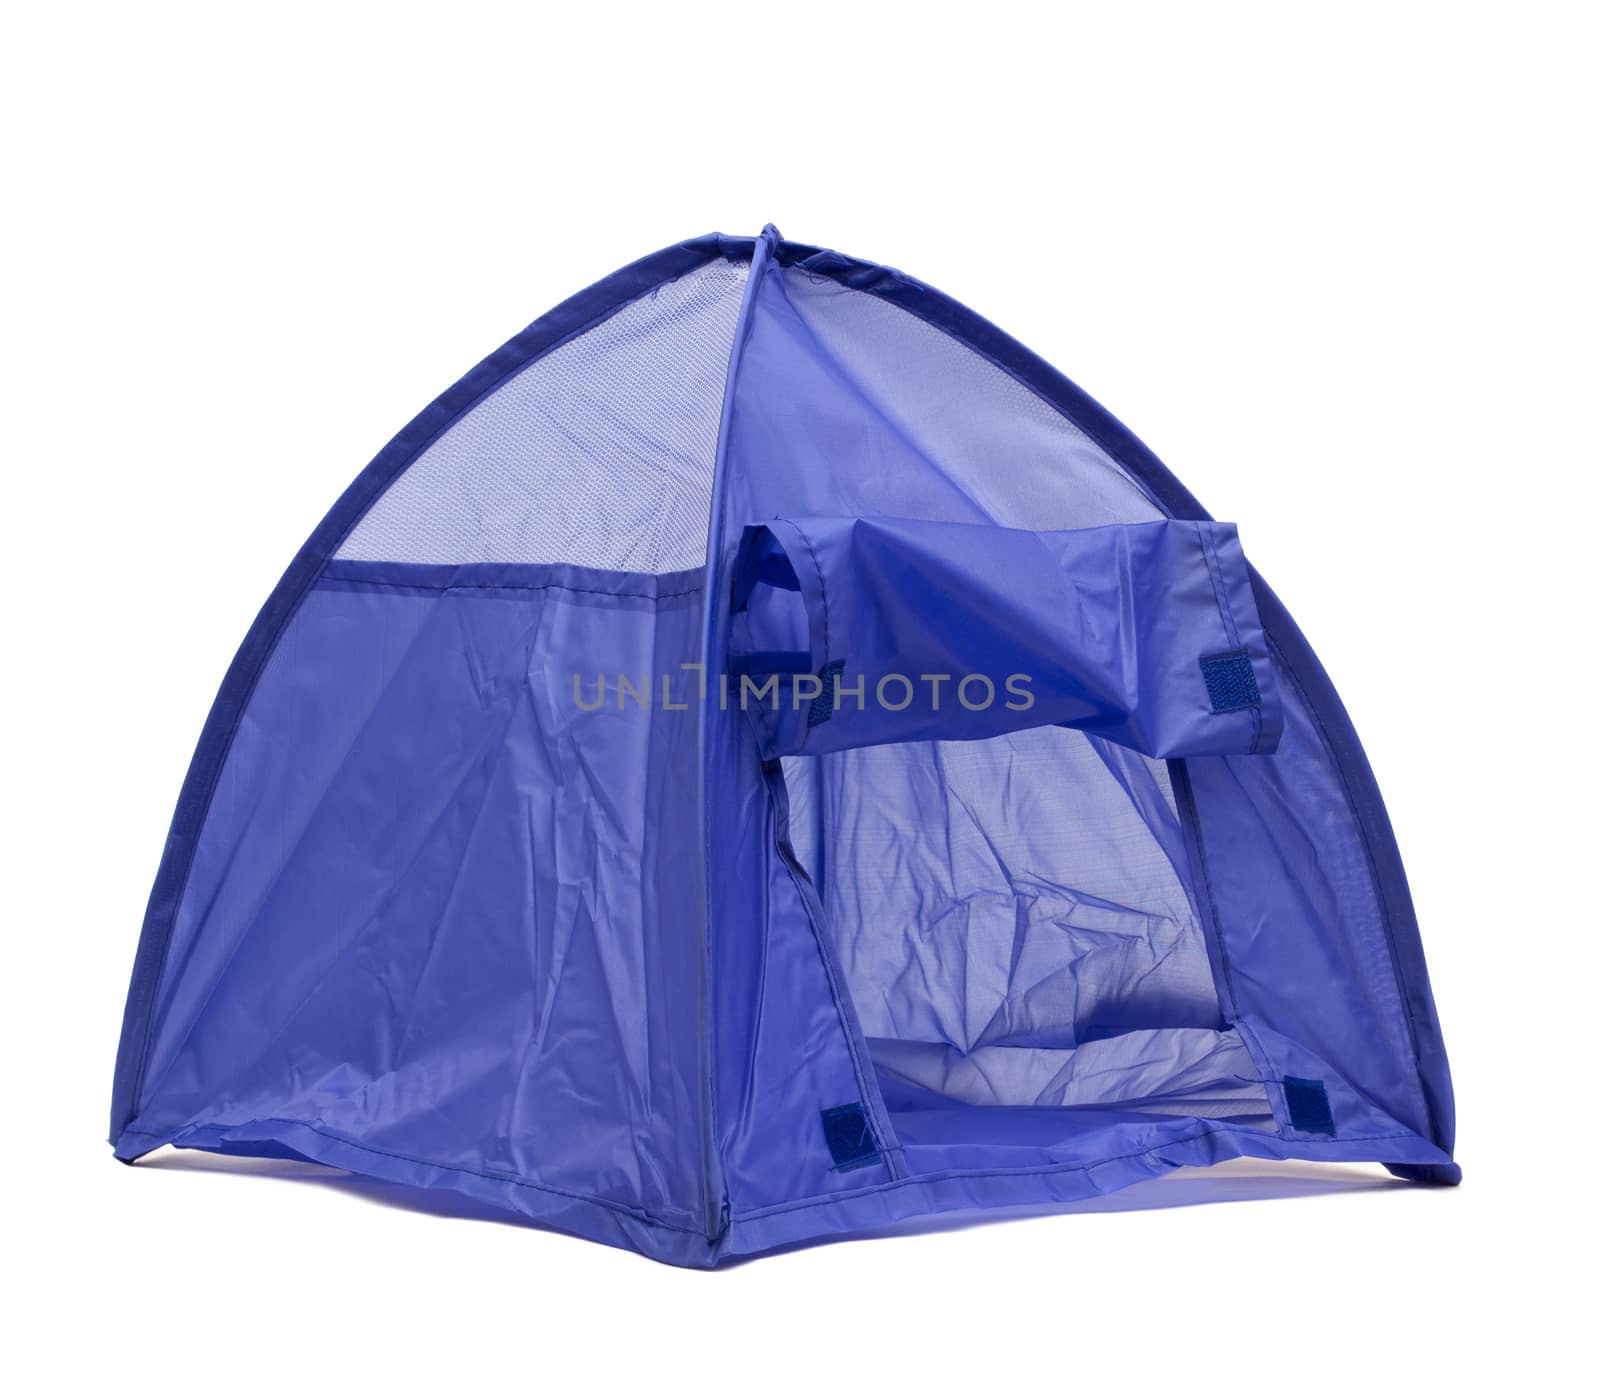 blue tent by gdvcom